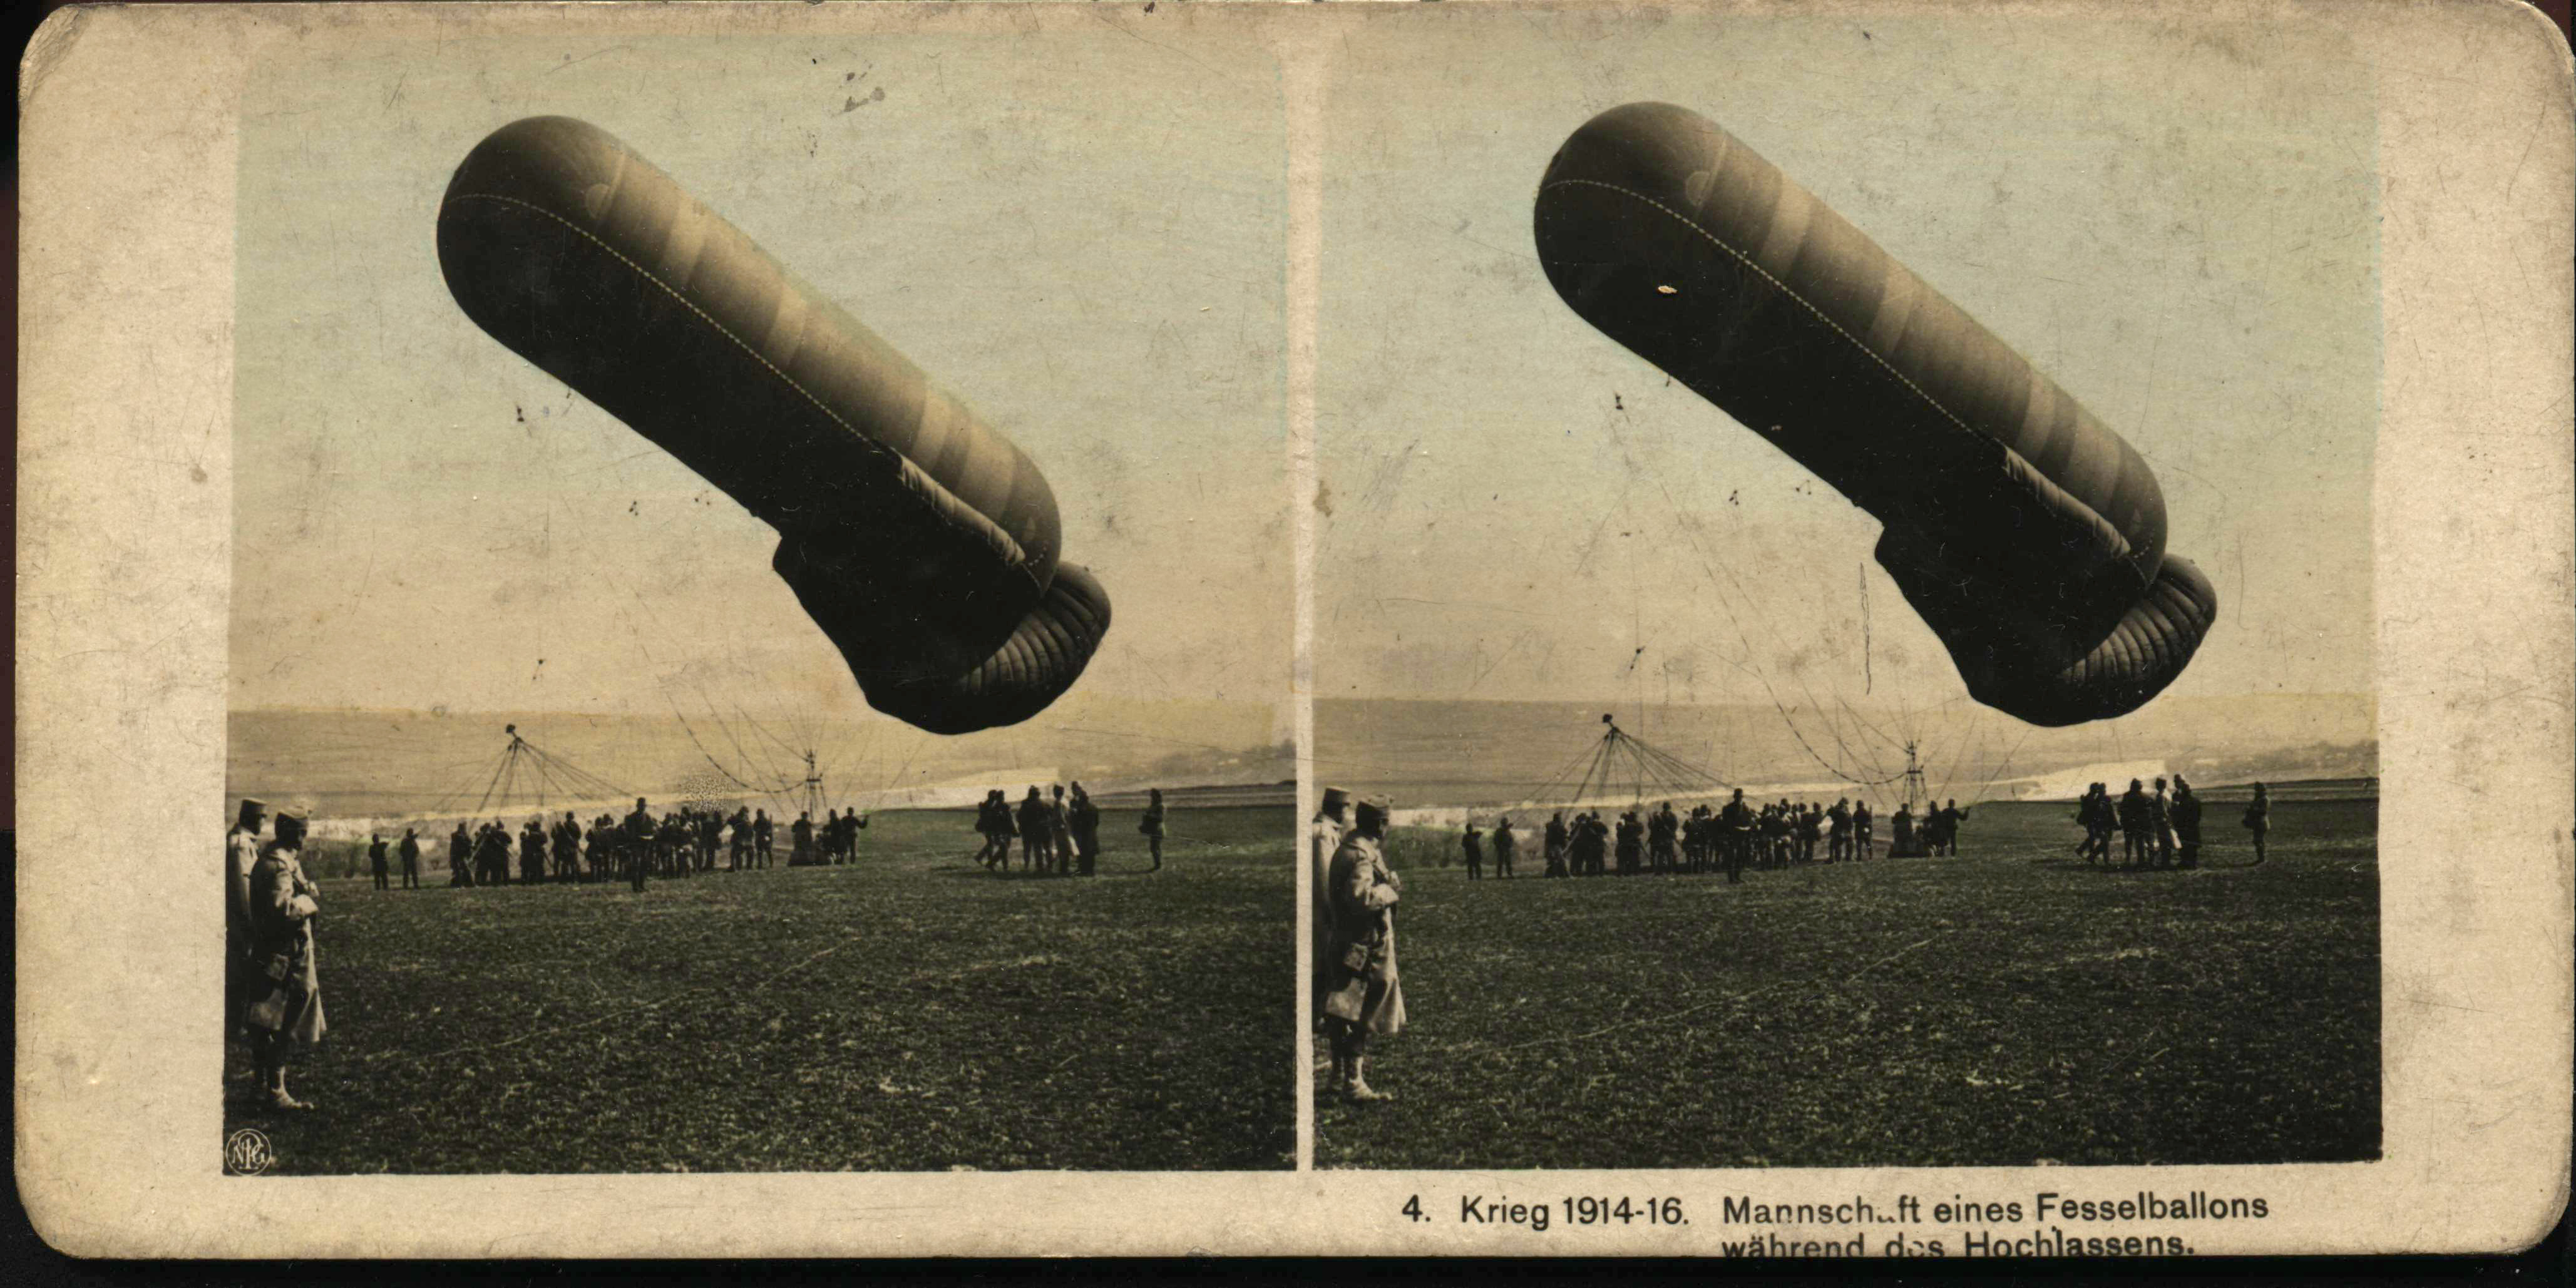 "Mannschaft eines Fesselballons während des Hochlassens" - Crew of a captive balloon while raising it